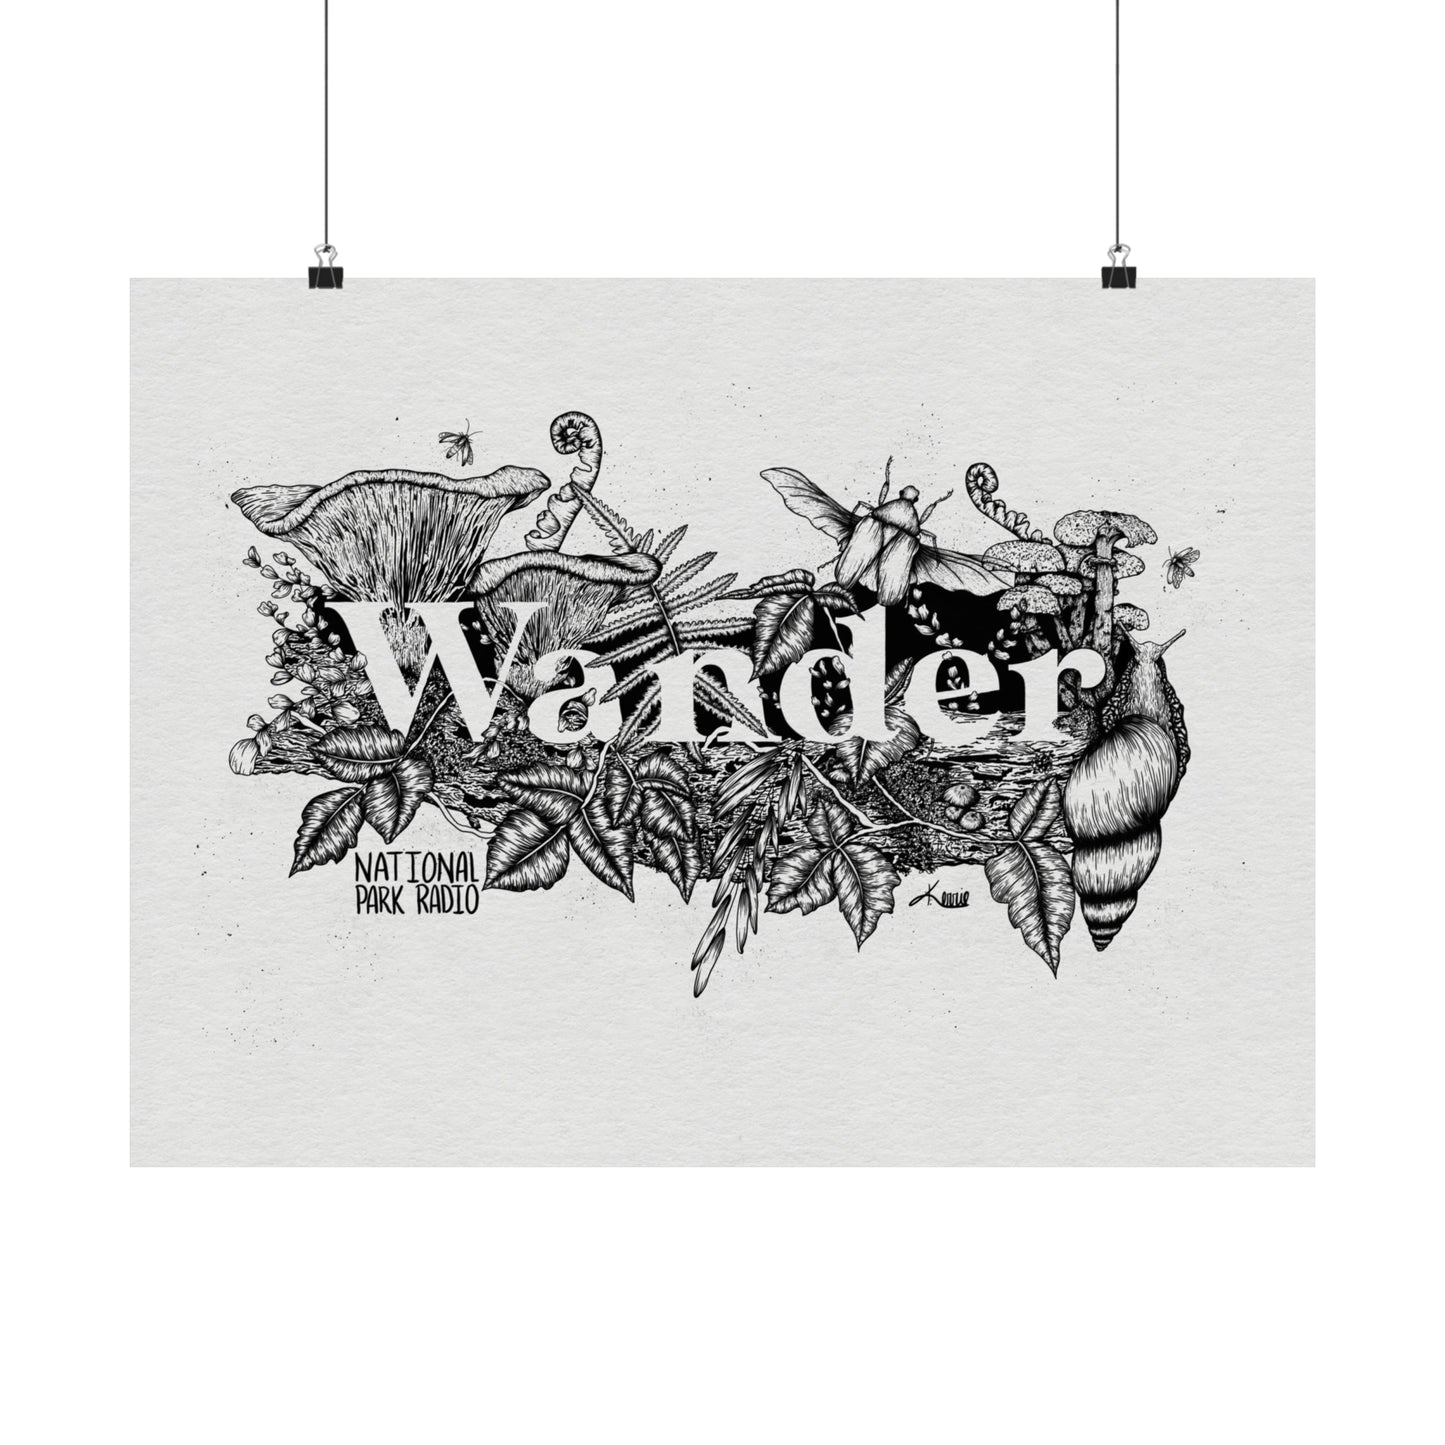 Wander (original artwork by Kerrie) Matte Horizontal Poster Print